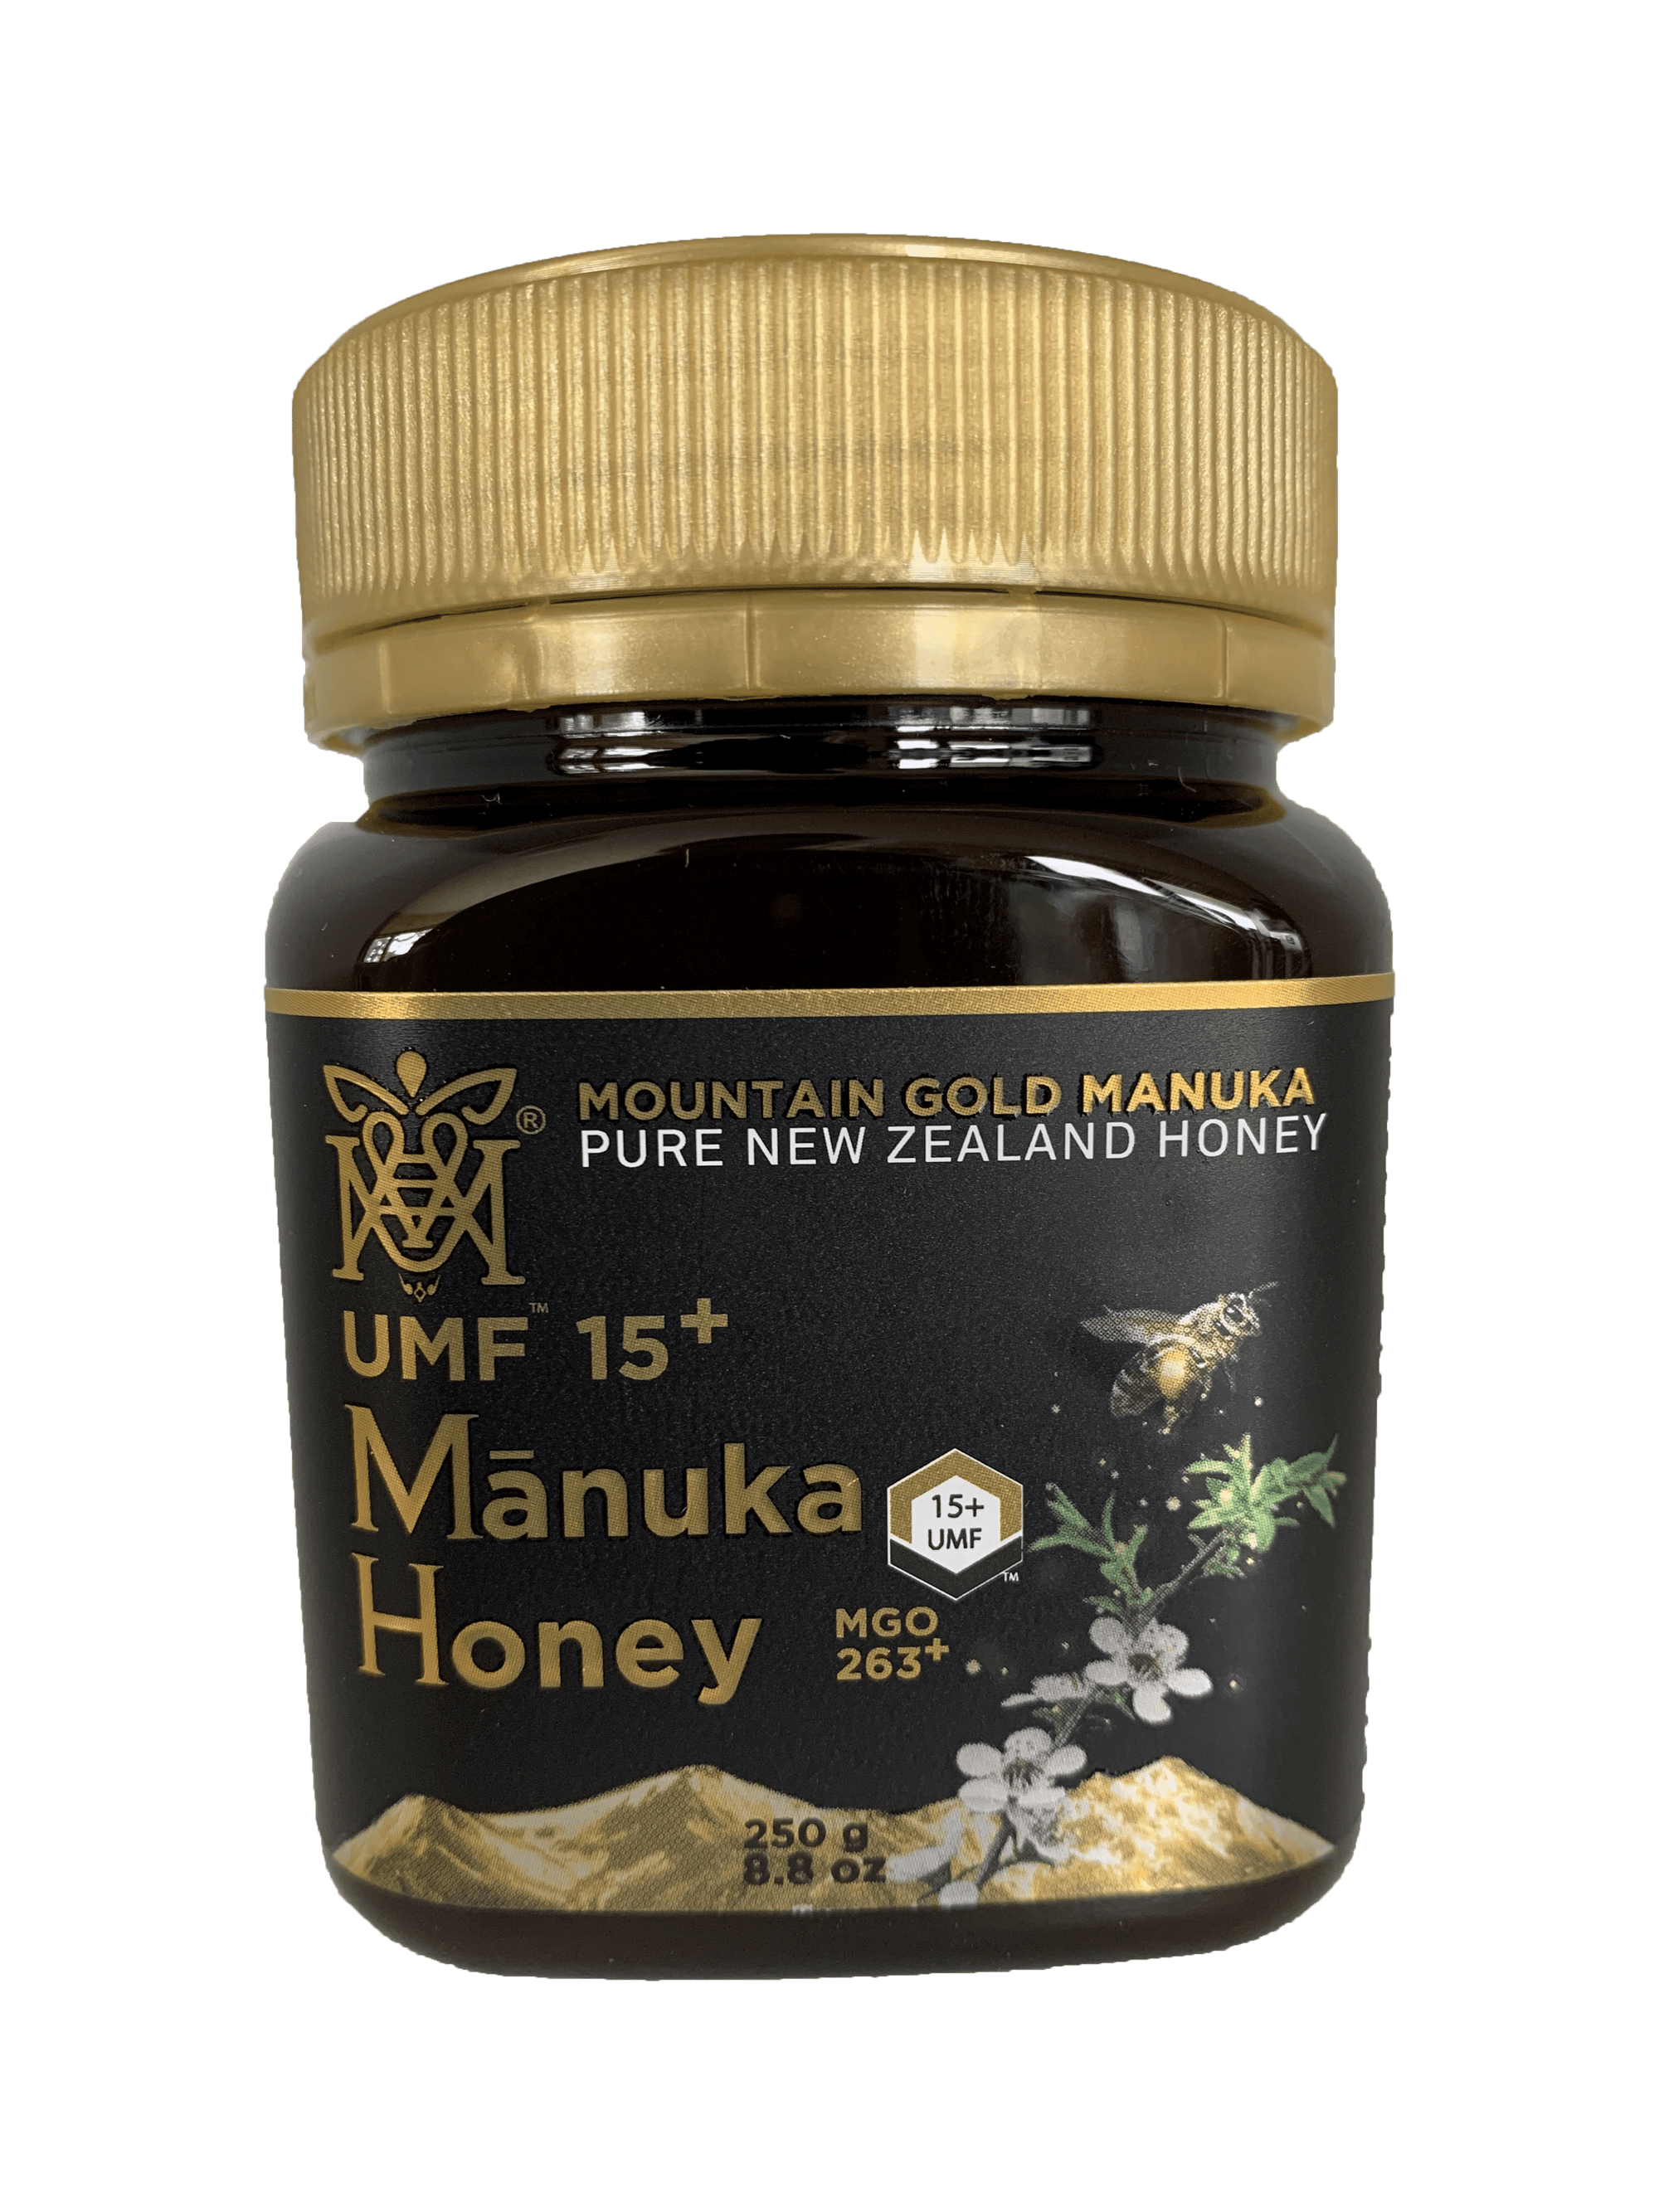 Mountain Gold Manuka Honey UMF15+ MGO 514+